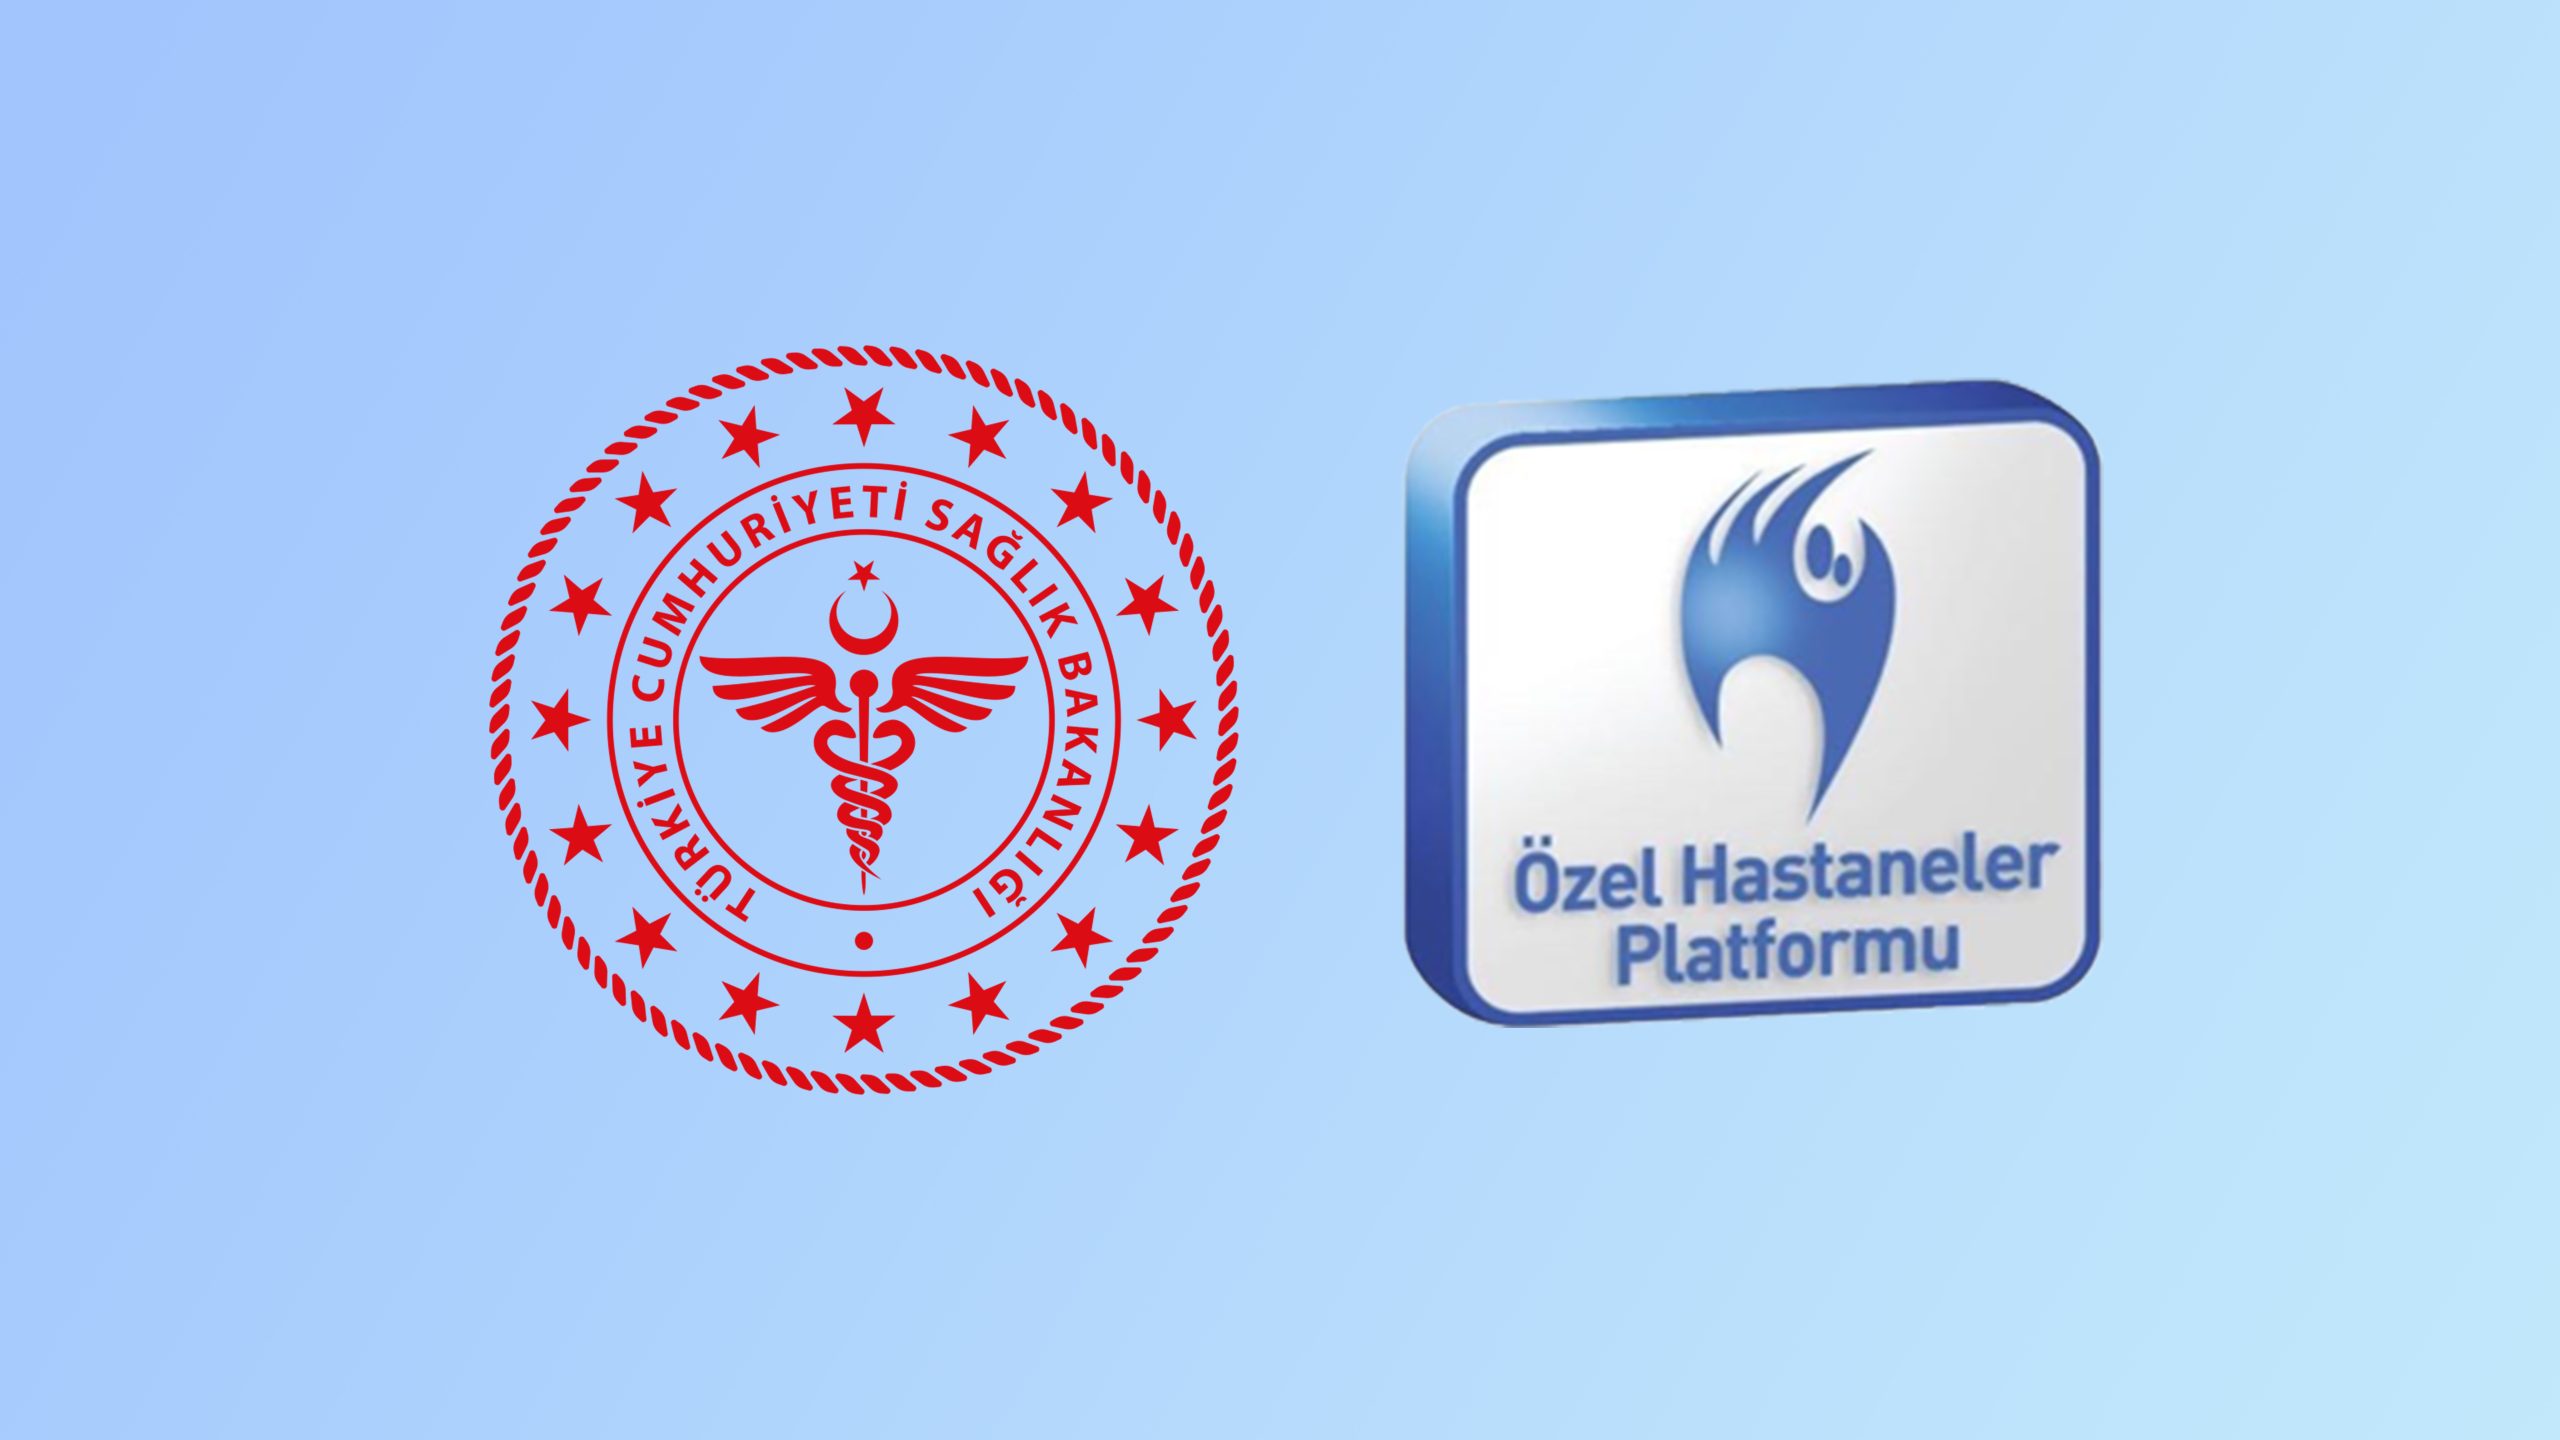 Sağlık Hizmetleri Genel Müdürü Sayın Prof. Dr. Ahmet TEKİN Bey'in katılımları ile online görüşme gerçekleşti.